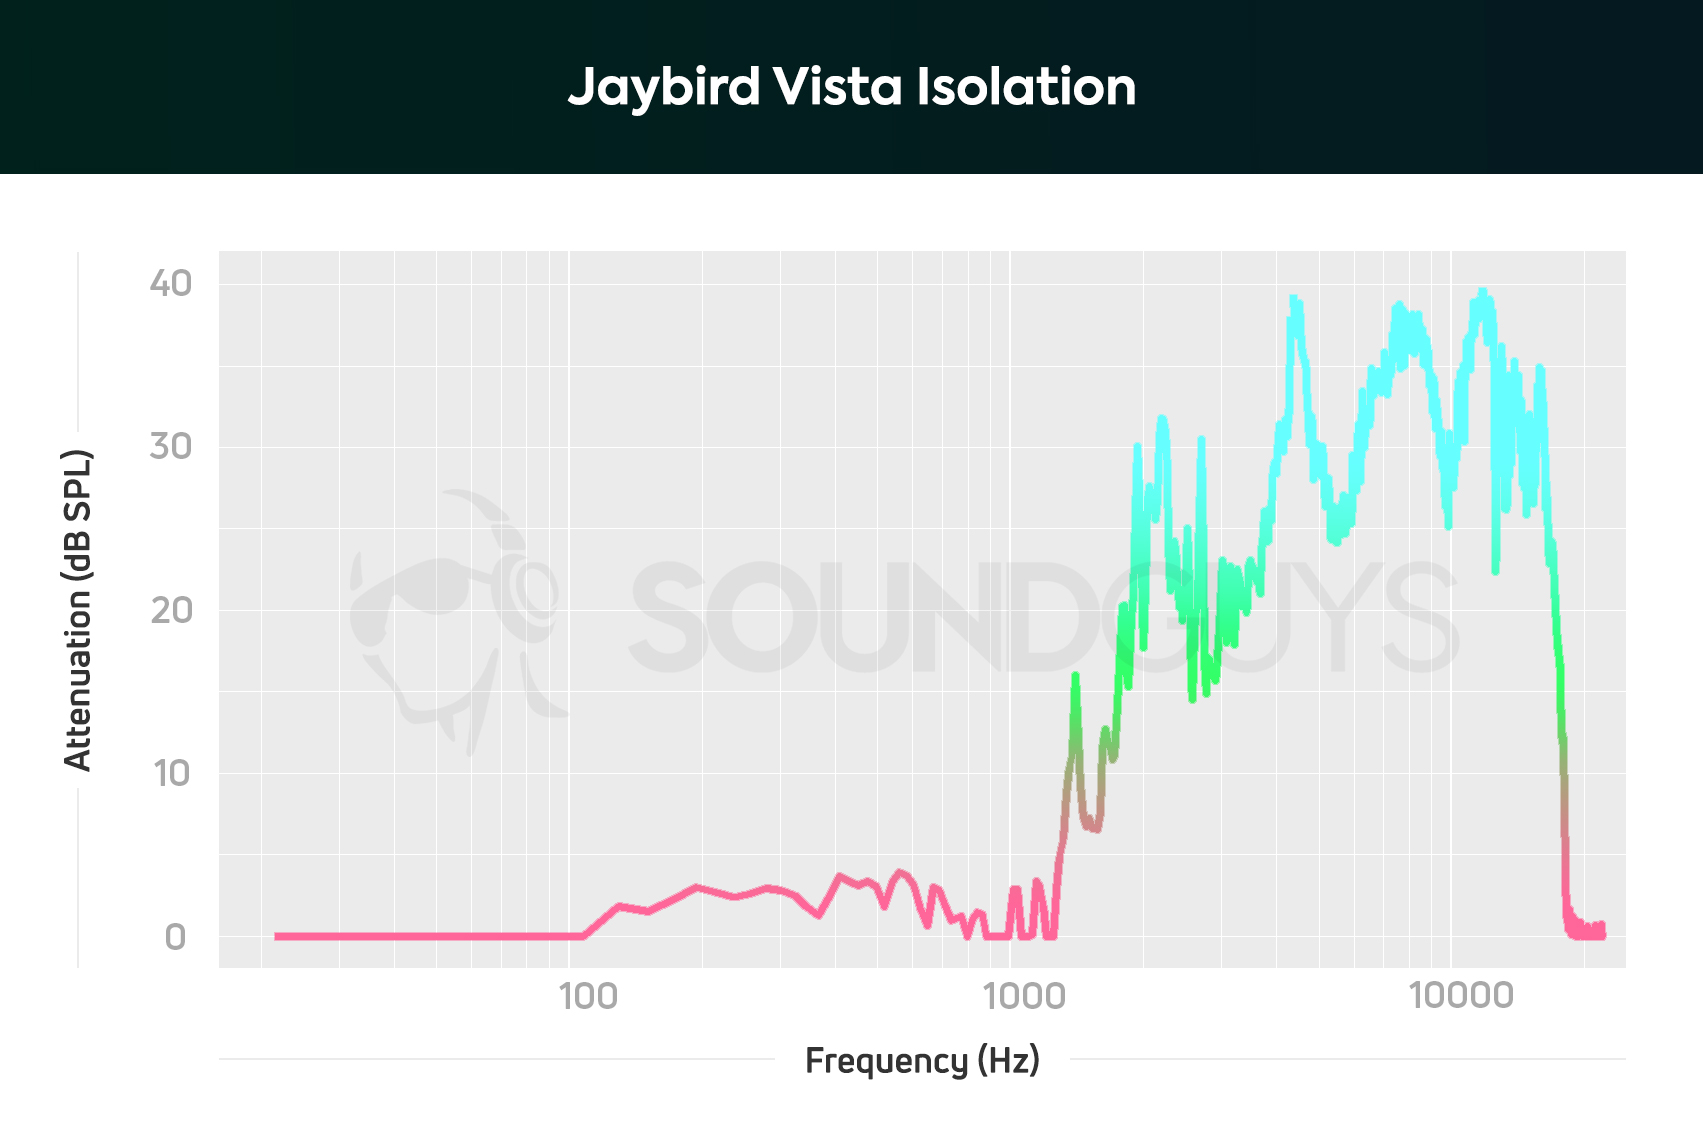 Jaybird Vista isolation chart.